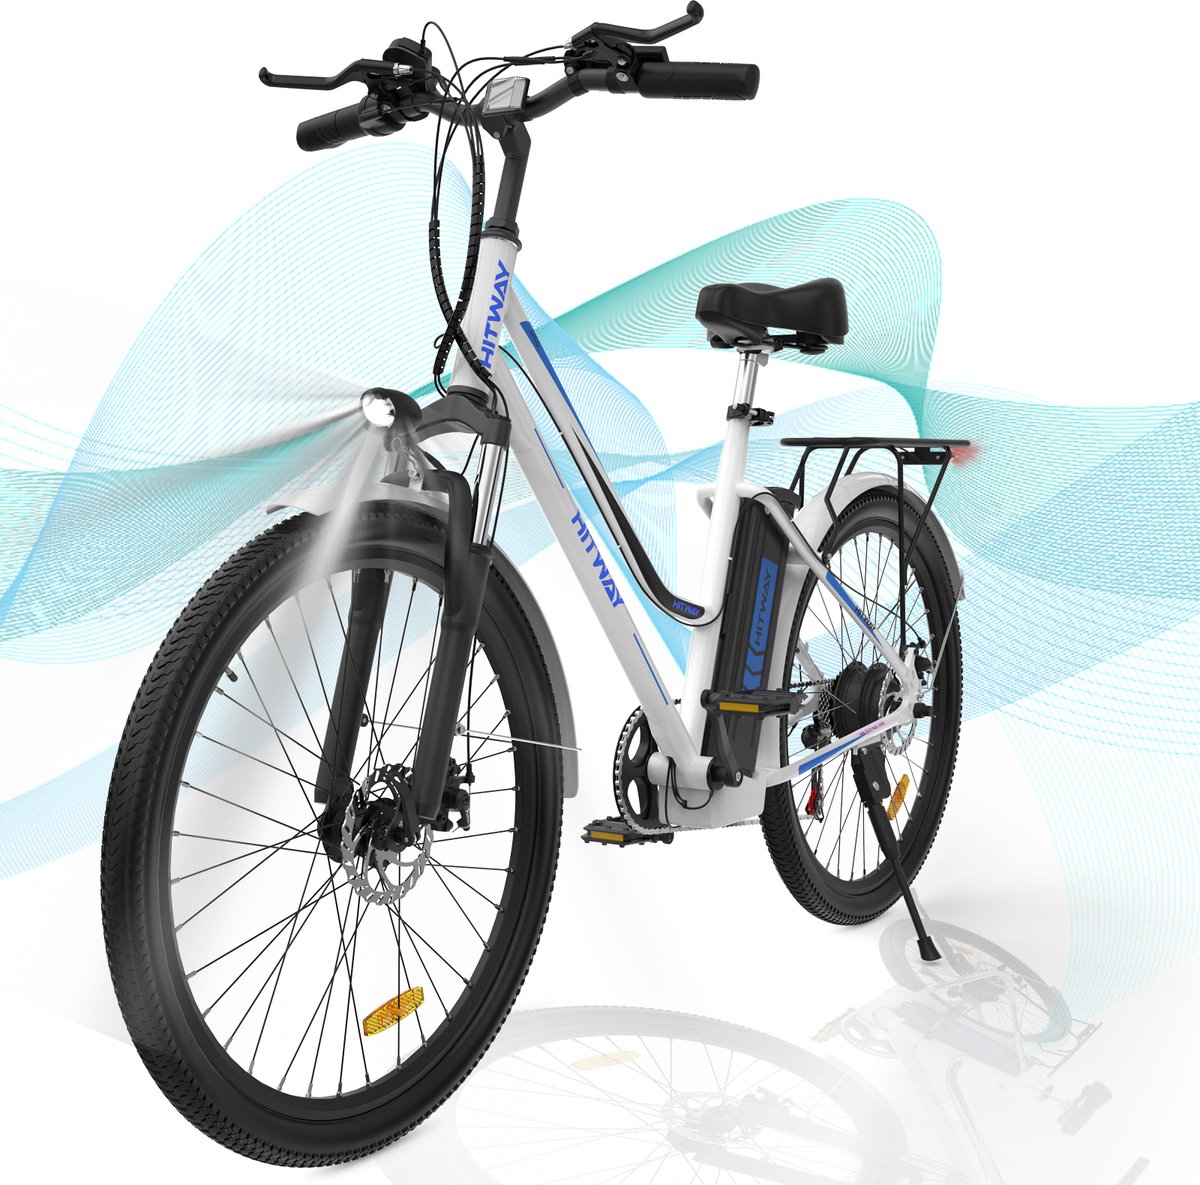 Hitway elektrische fiets 26"" met 36V 11.2Ah batterij 250W motor 25km h en elektrische fietsbereik 35 90km voor mannen en vrouwen| Wit Blauw